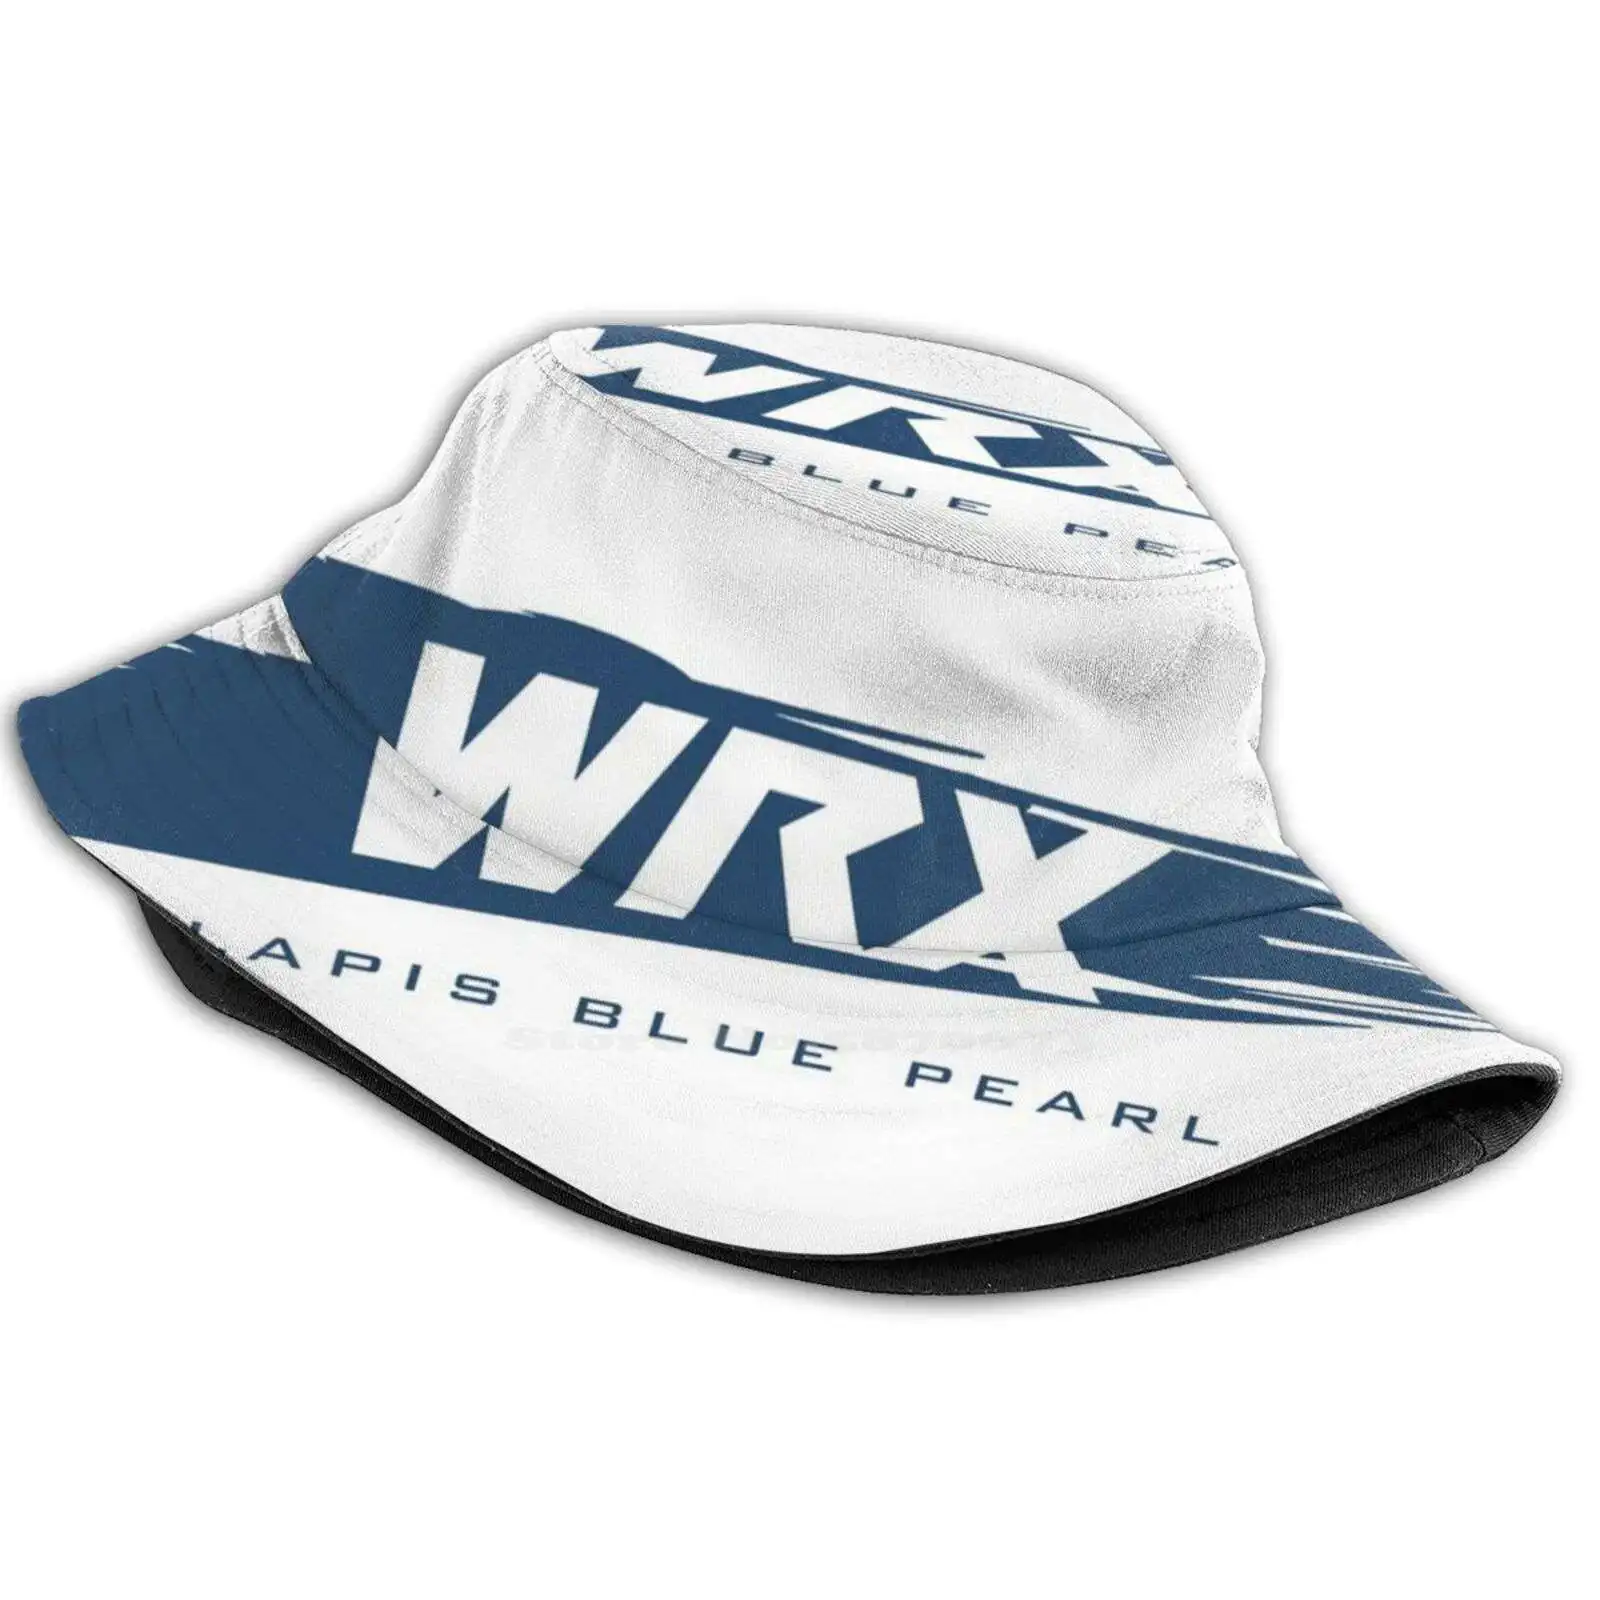 Wrx Lapis Blue Pearl Корейская Женская Уличная Солнцезащитная Шляпа-Ведро Jdm Boxer Двигатель Brz Sti Fozzy Legacy Awd Baja Auto Sti 1